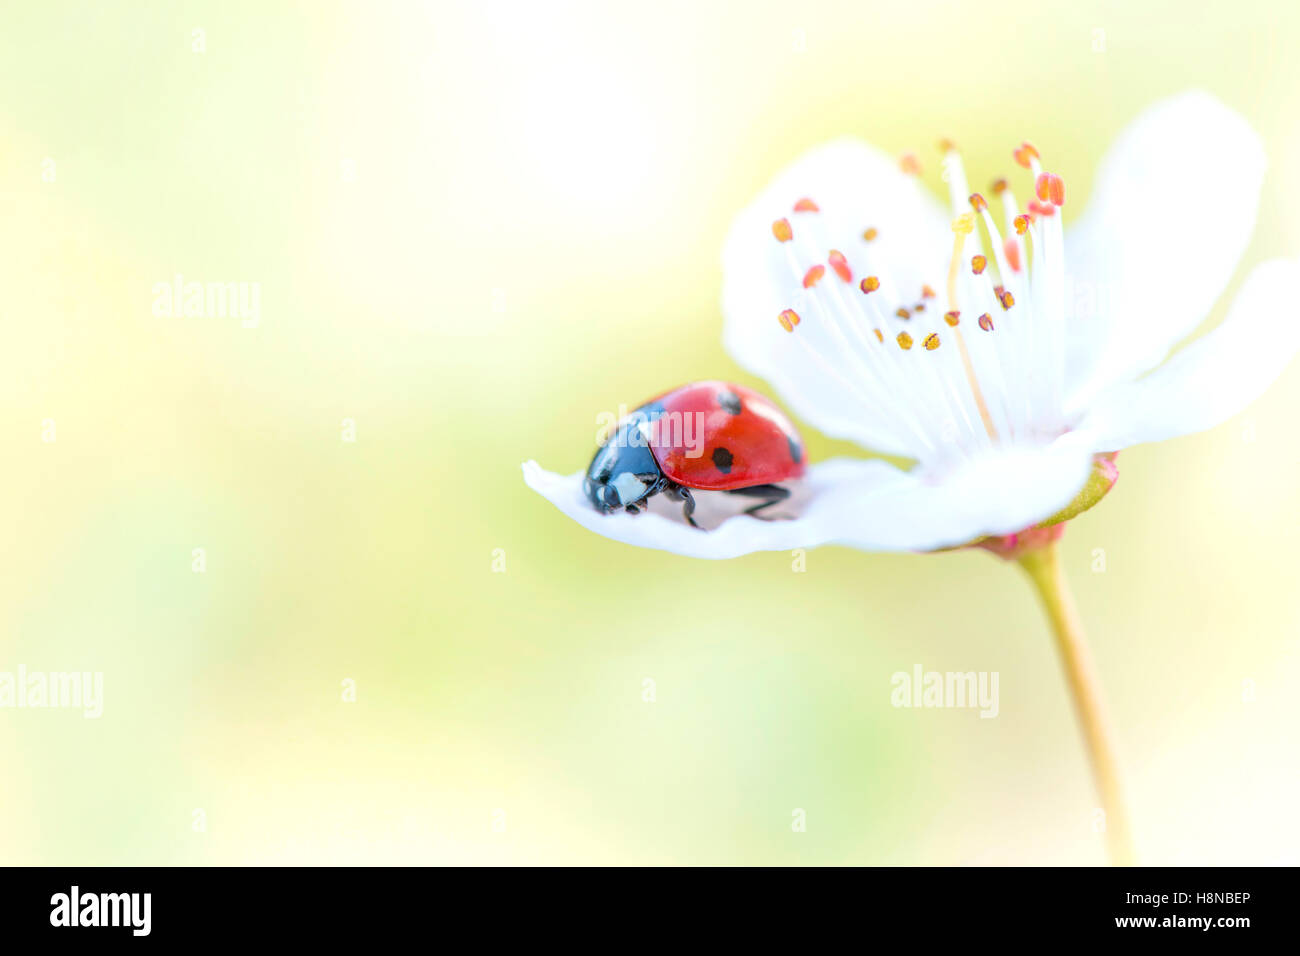 Ein sieben-Punkt-Marienkäfer auf einer weißen Blüte Blume Stockfoto